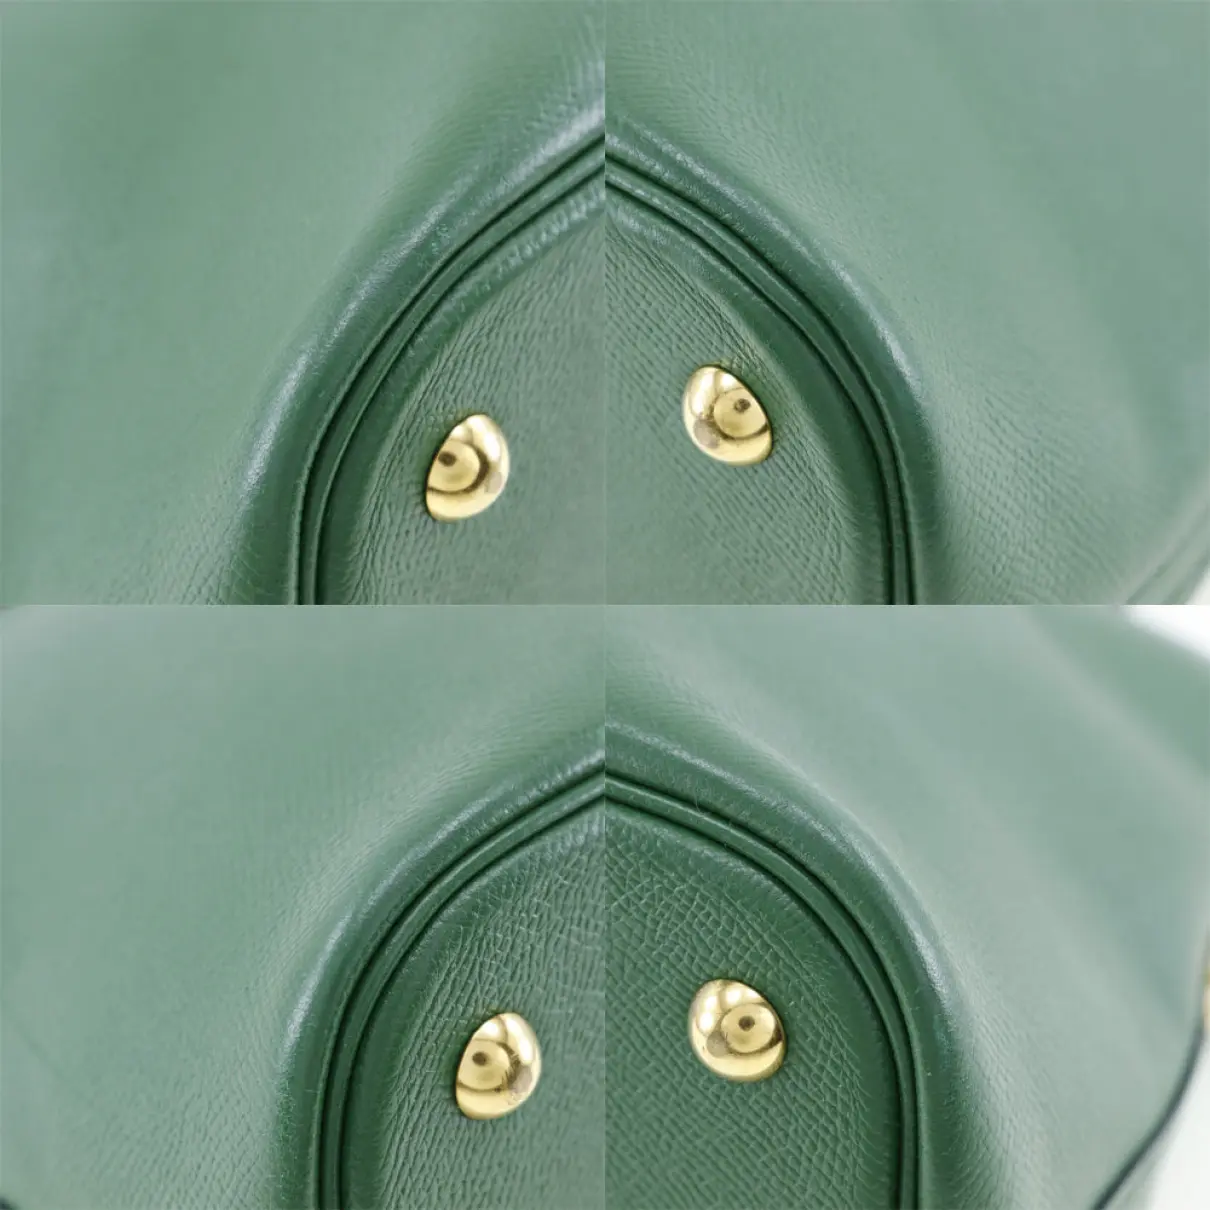 Buy Hermès Bolide leather handbag online - Vintage